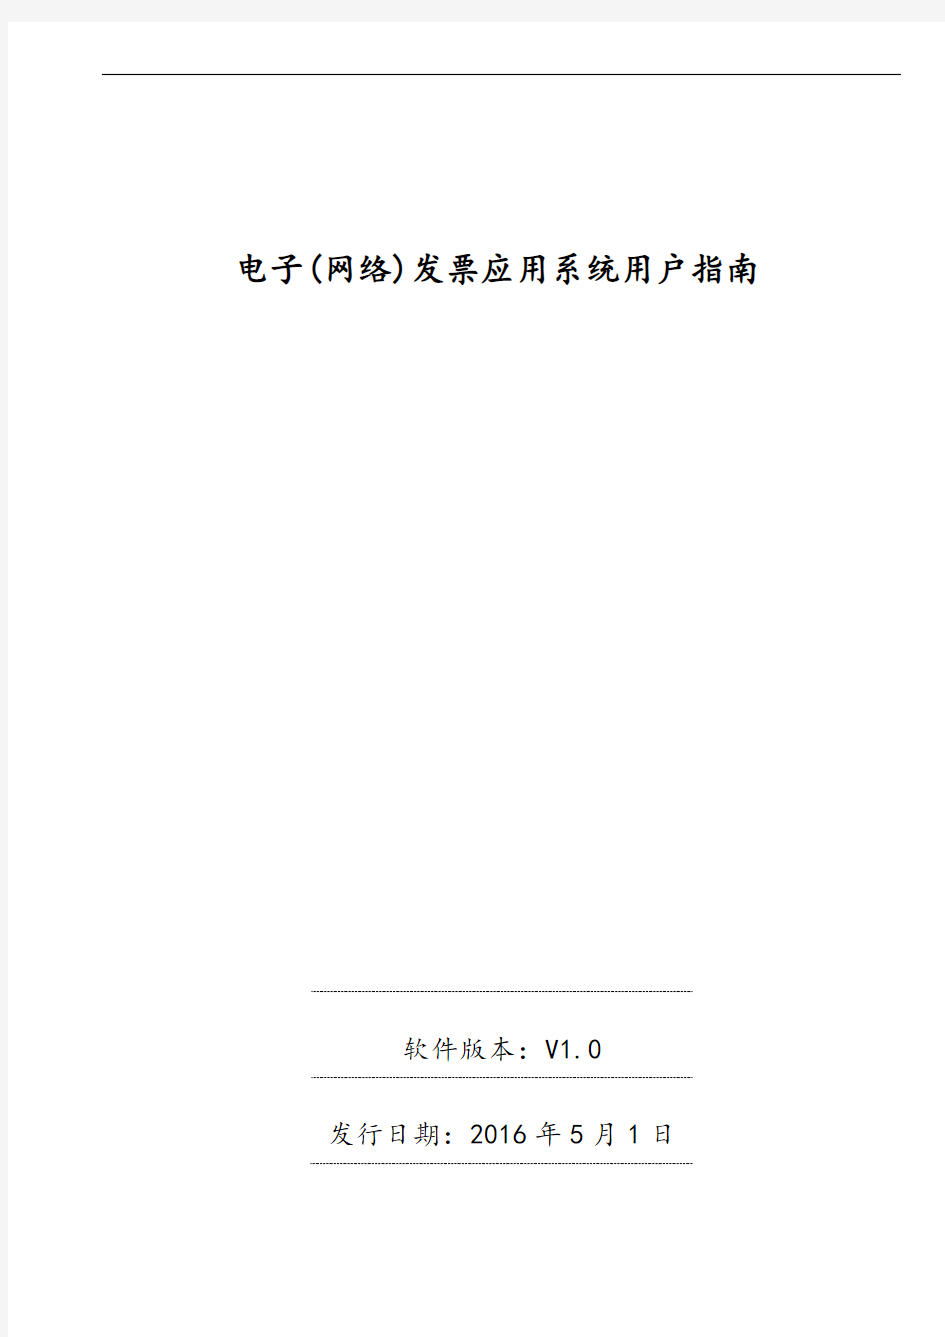 广东省国家税务局电子(网络)发票指导应用系统用户指南设计